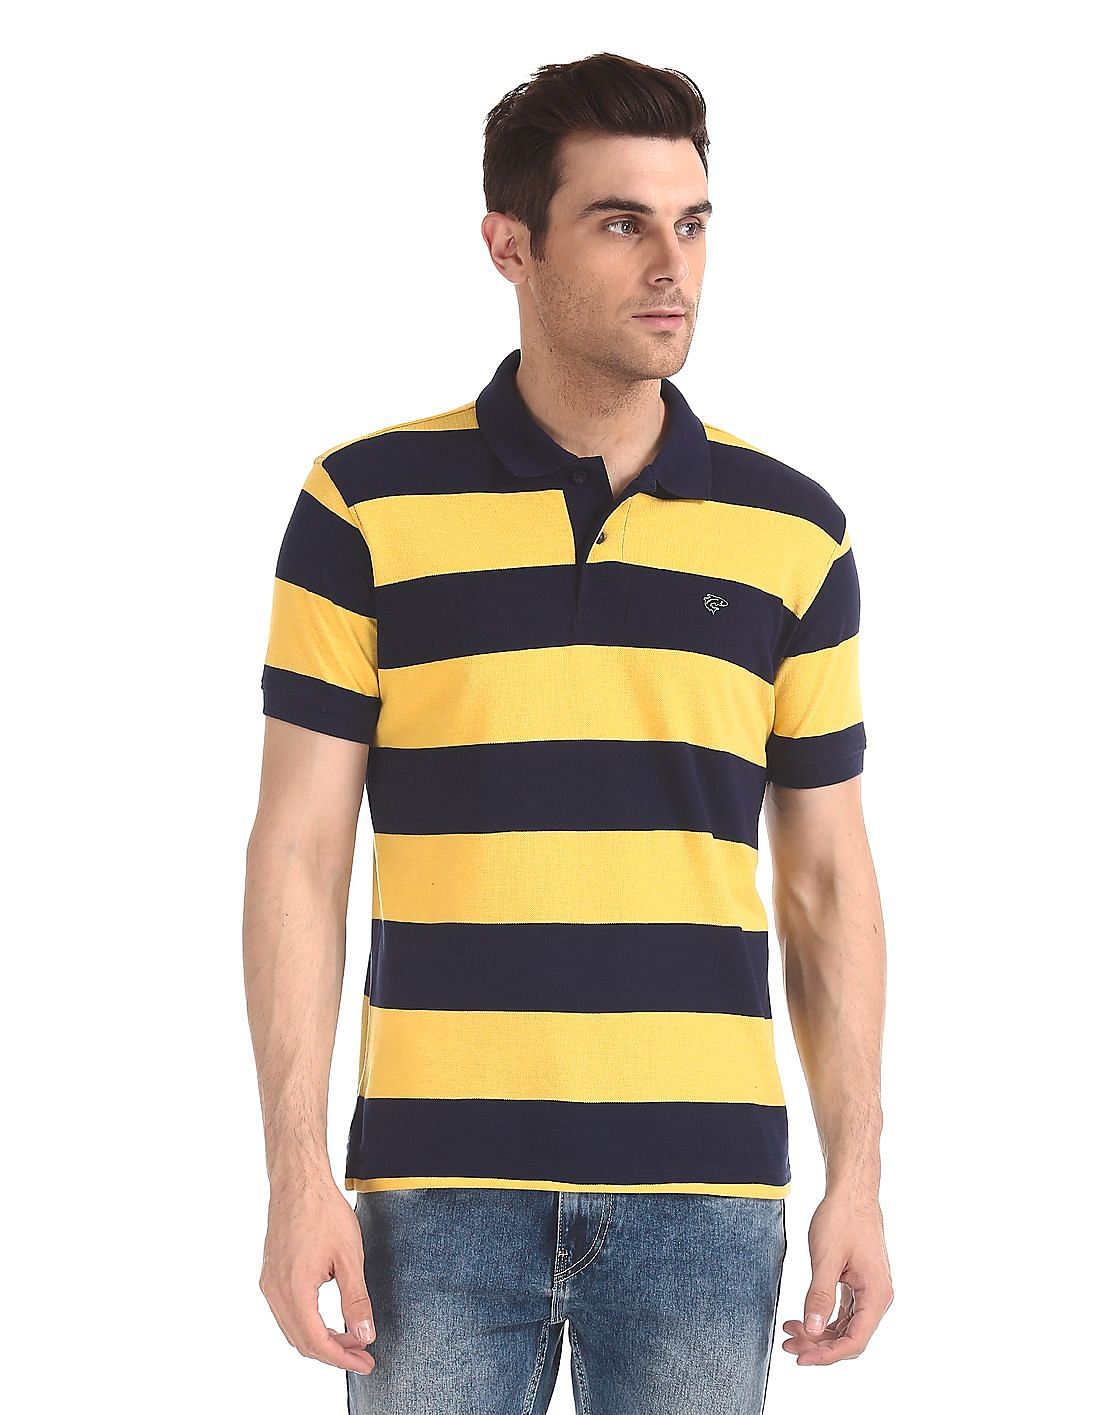 Buy Ruggers Horizontal Stripe Pique Polo Shirt - NNNOW.com